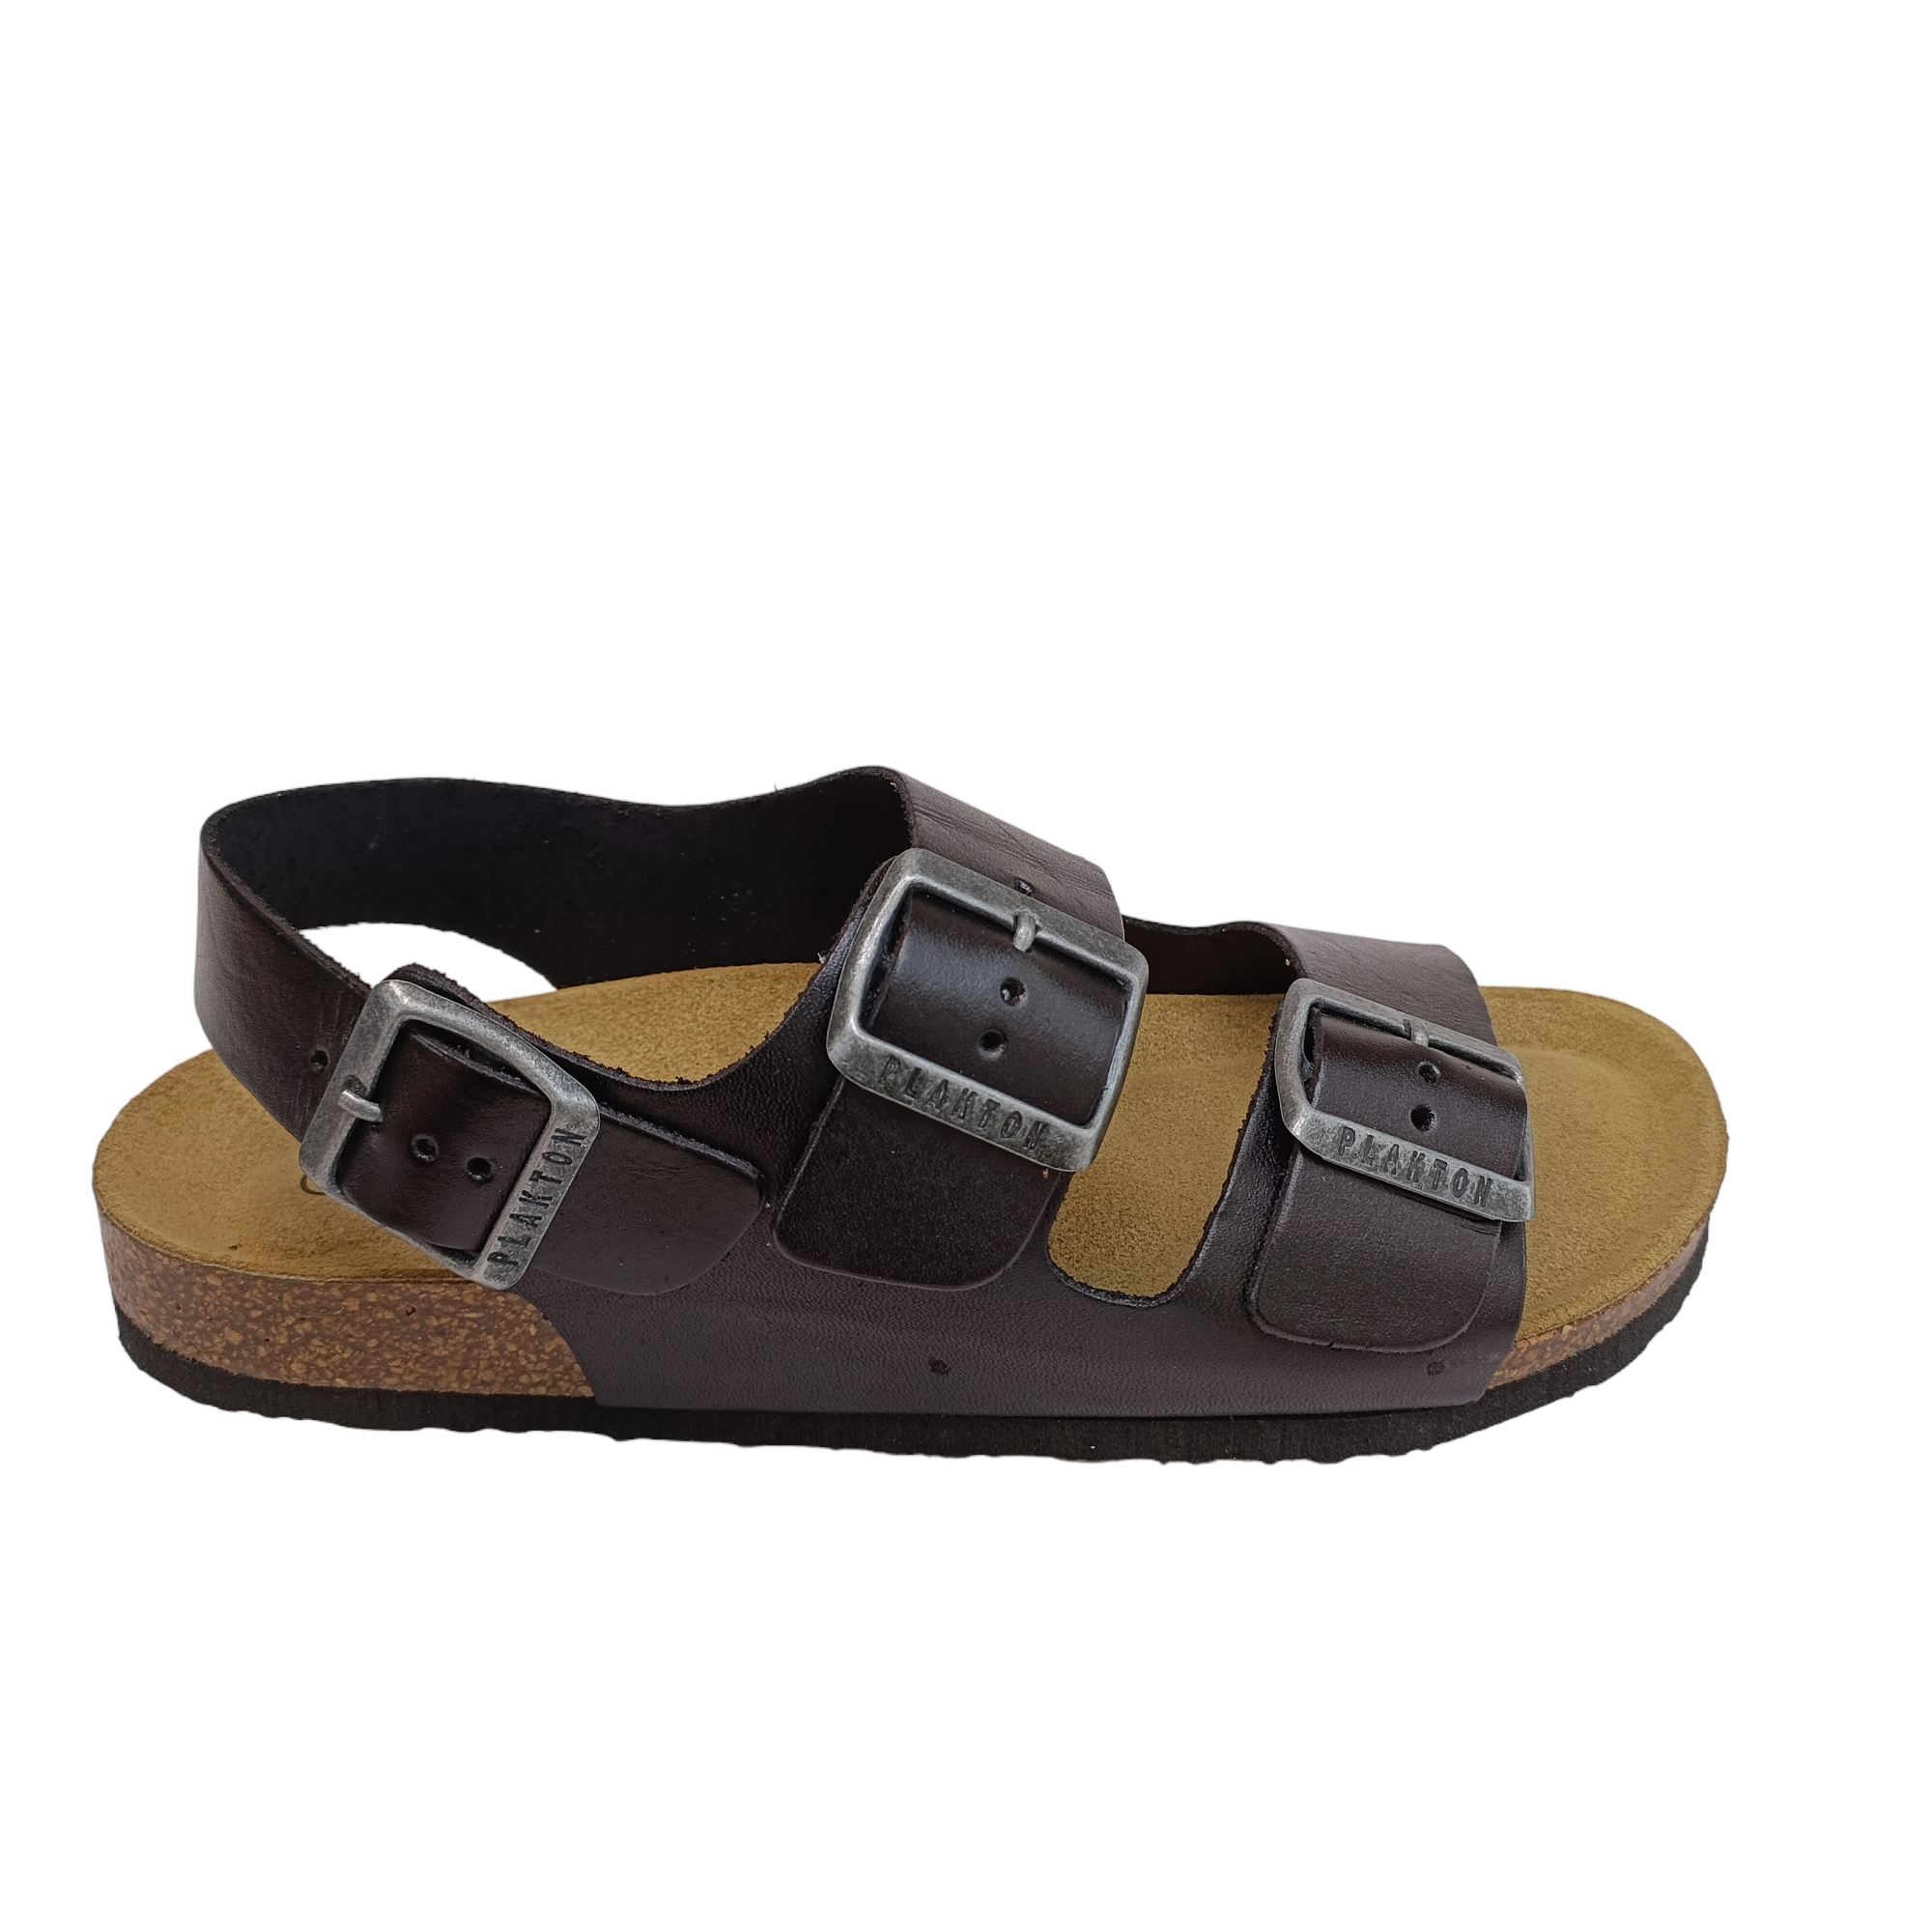 Pretzel - shoe&amp;me - Plakton - Sandal - Sandals, Summer, Womens